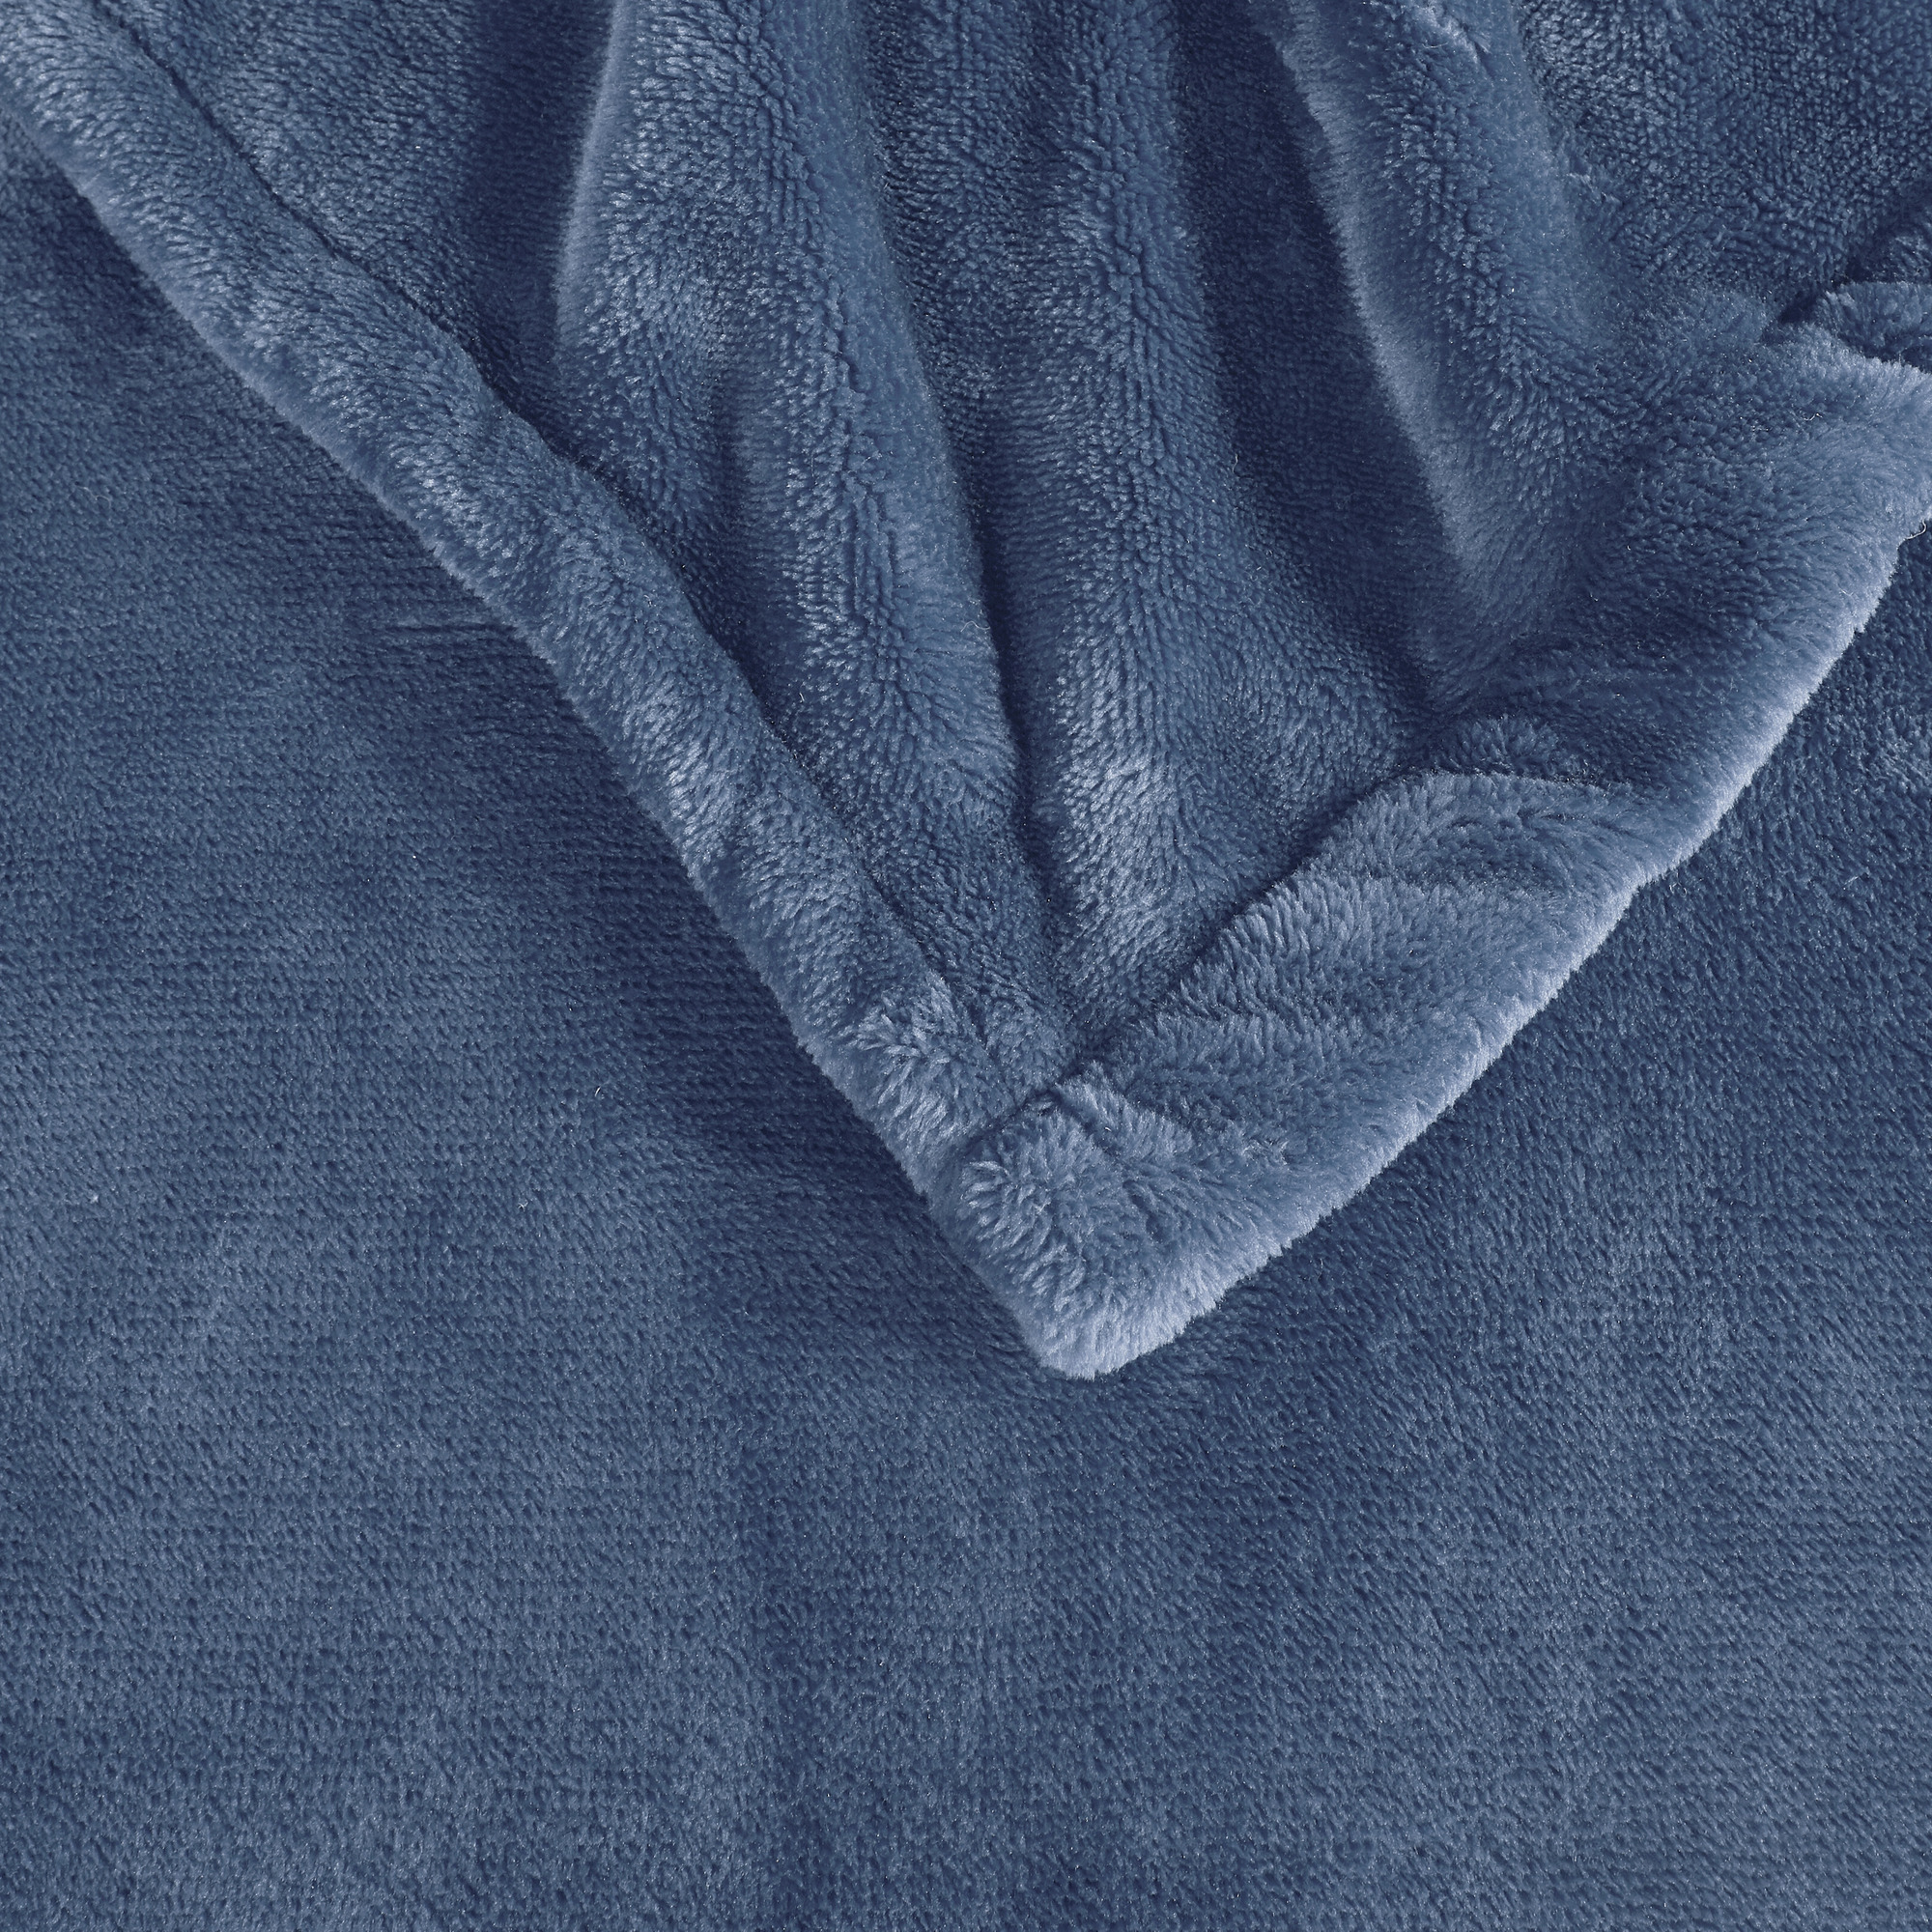 Blanket Full/Sapphire Blue - image 5 of 11